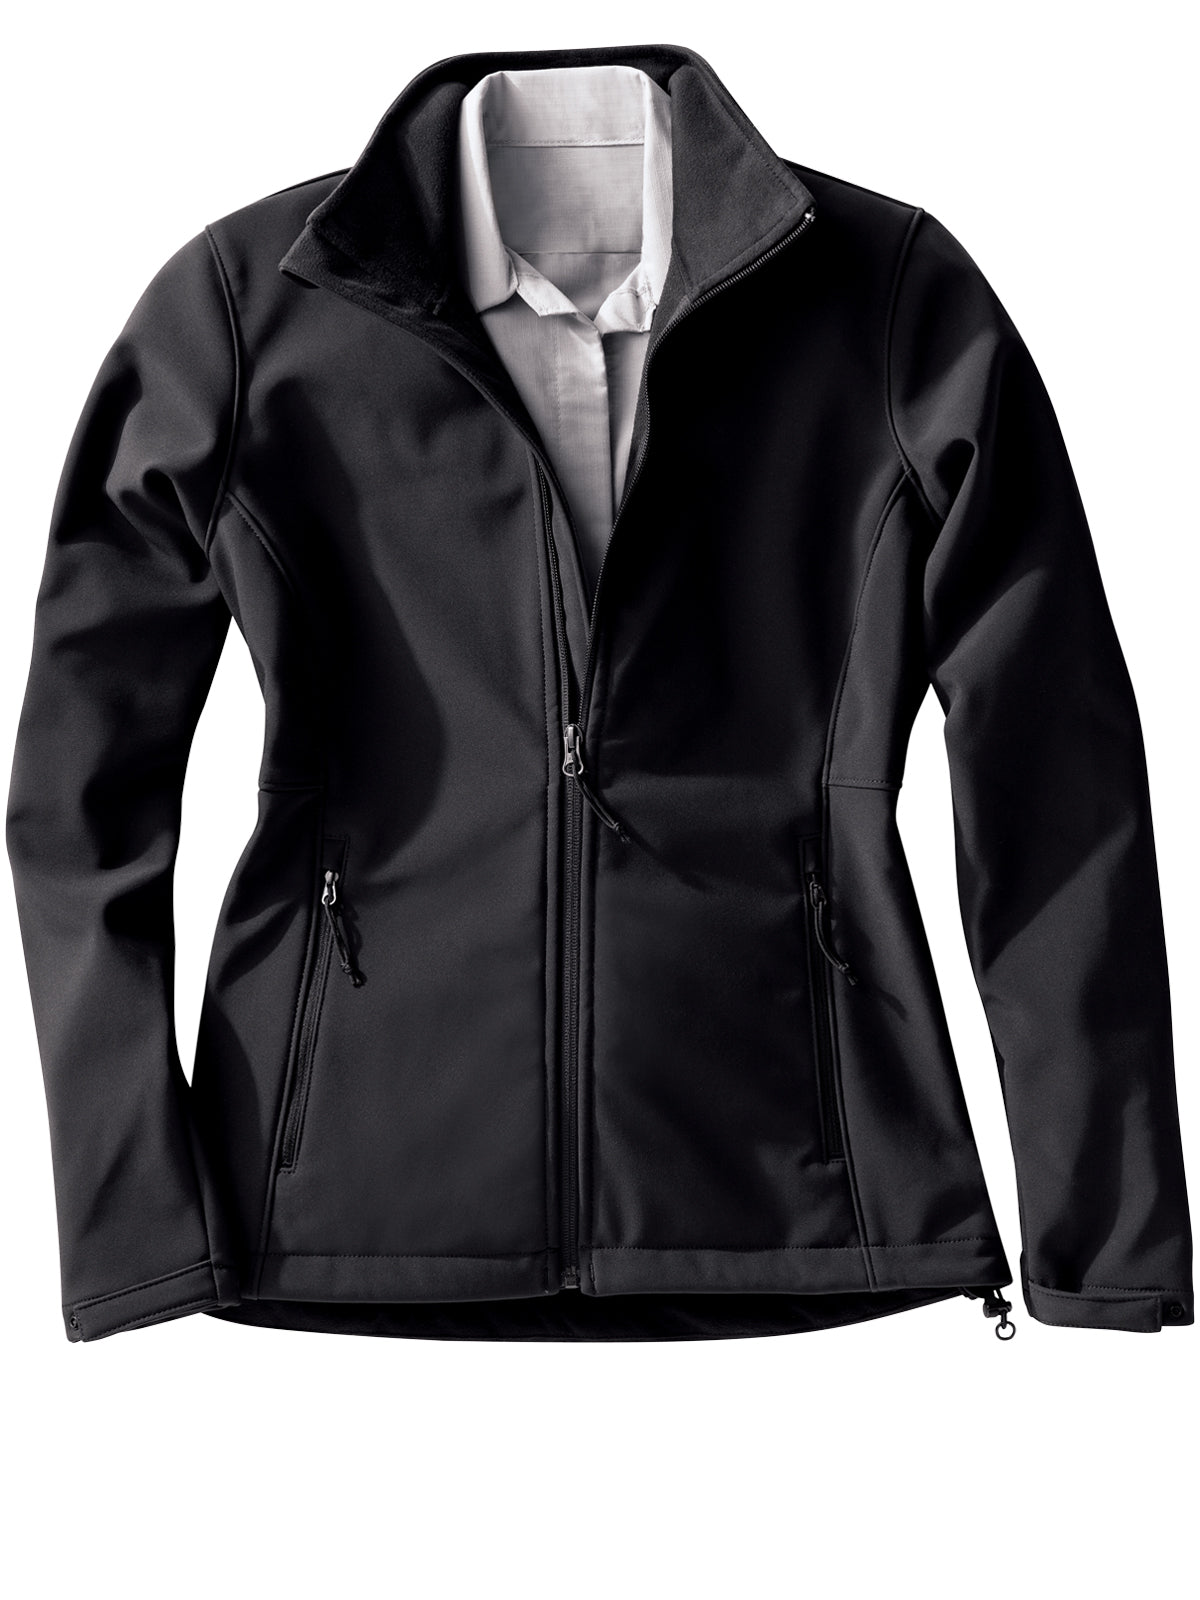 Women's Deluxe Soft Shell Jacket - JP67 - Black